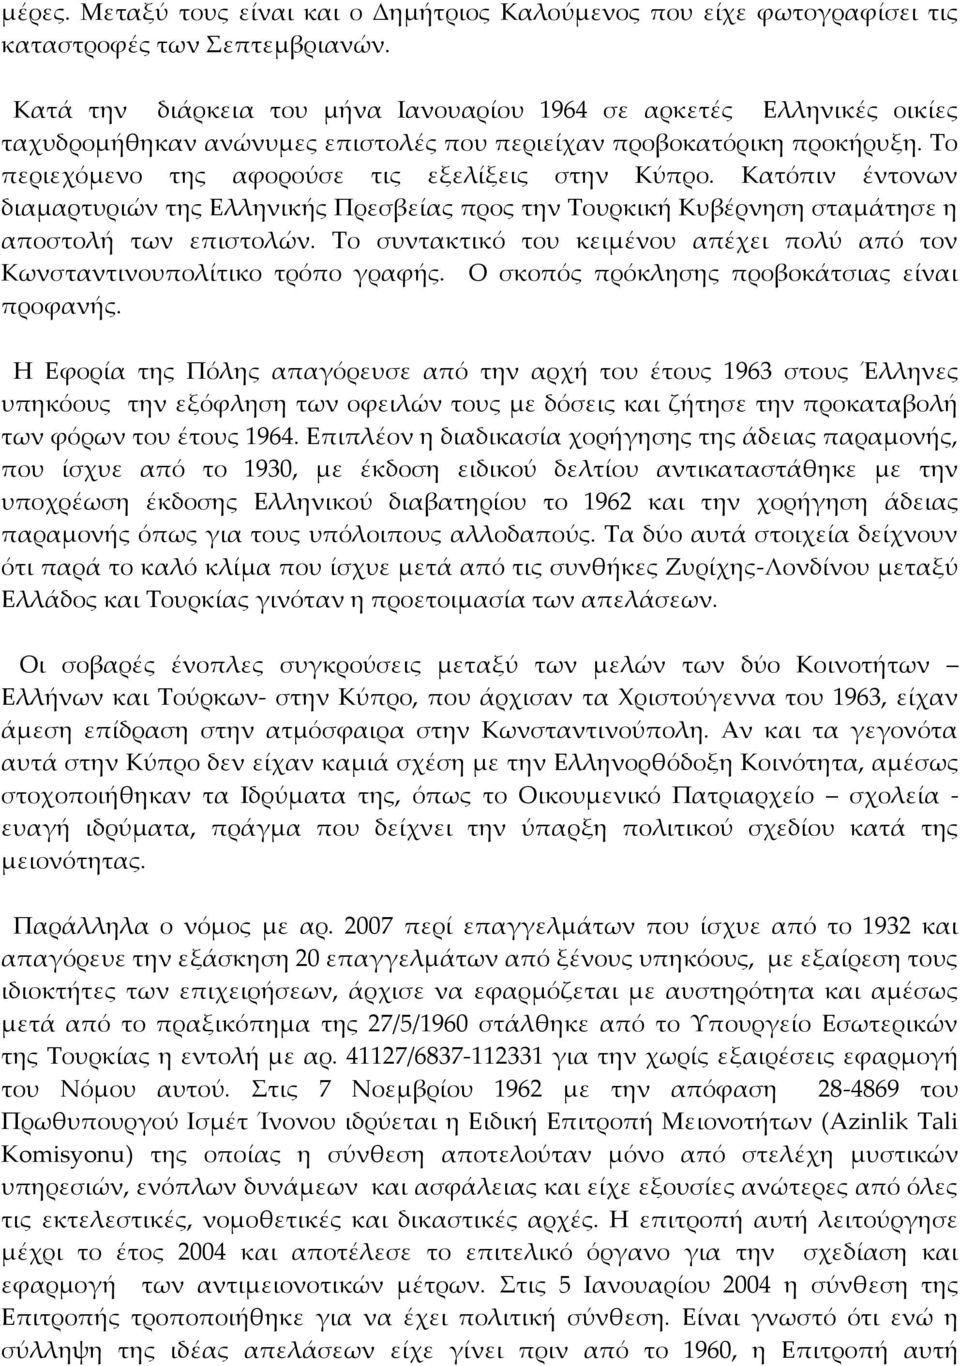 Κατόπιν έντονων διαμαρτυριών της Ελληνικής Πρεσβείας προς την Τουρκική Κυβέρνηση σταμάτησε η αποστολή των επιστολών. Το συντακτικό του κειμένου απέχει πολύ από τον Κωνσταντινουπολίτικο τρόπο γραφής.